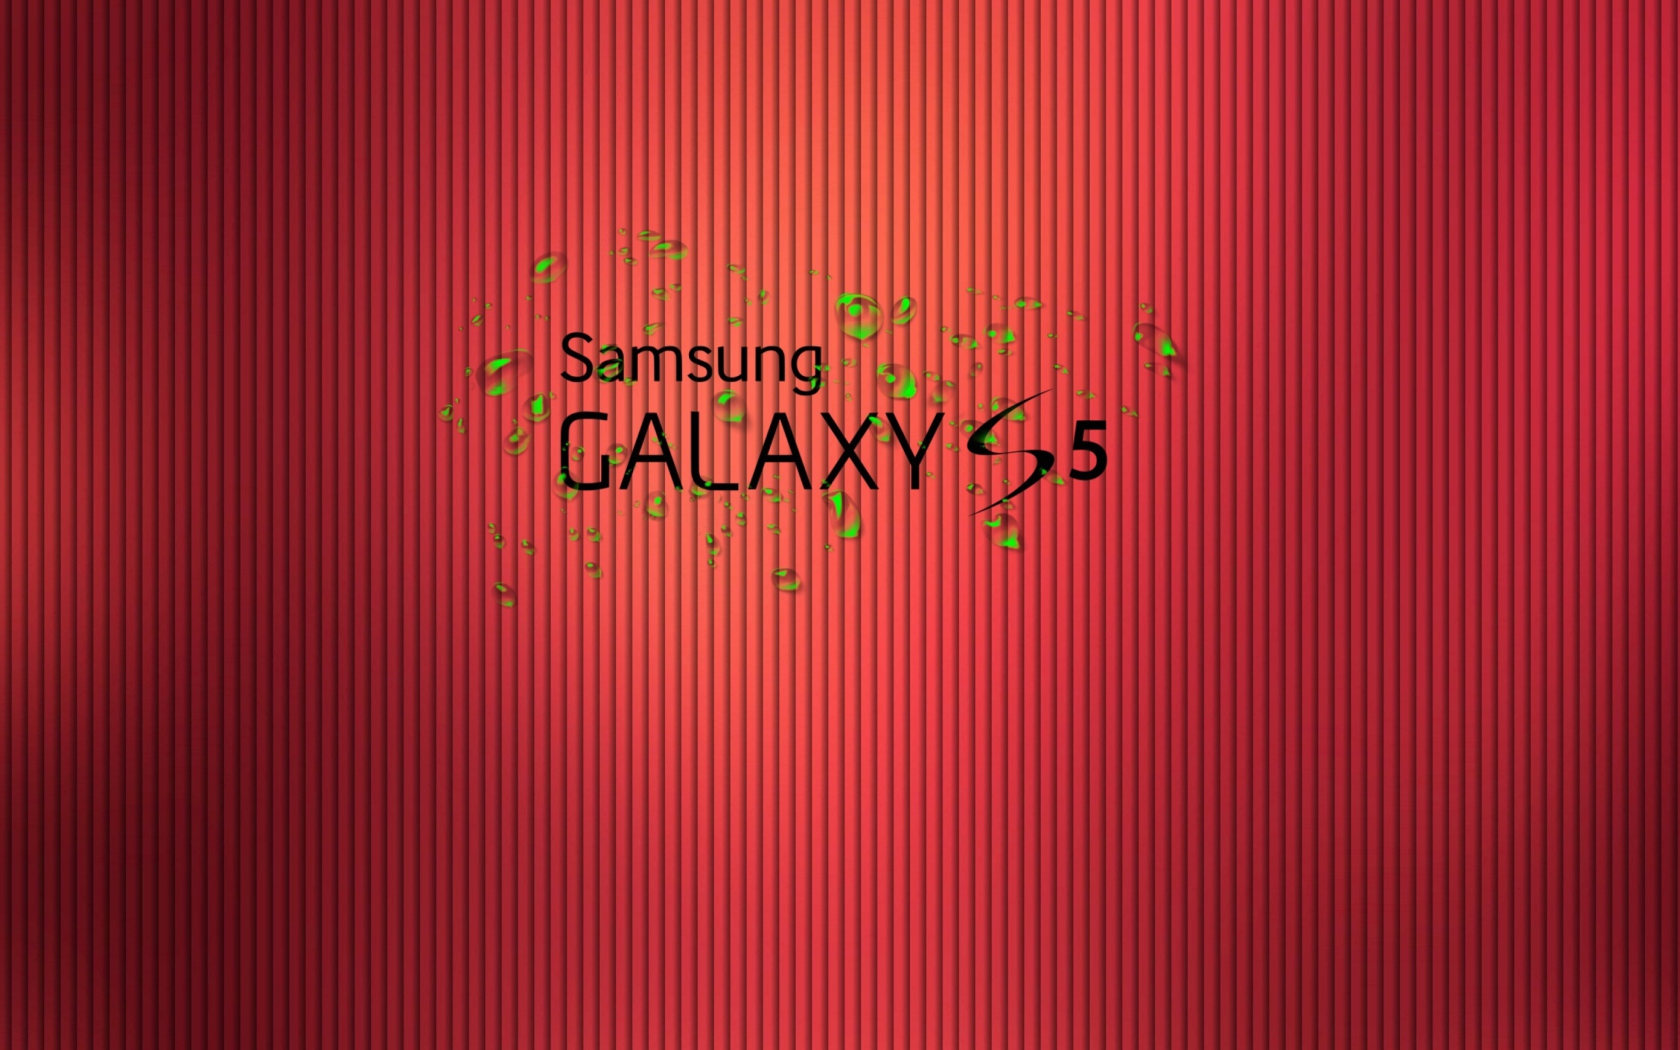 Galaxy S5 wallpaper 1680x1050